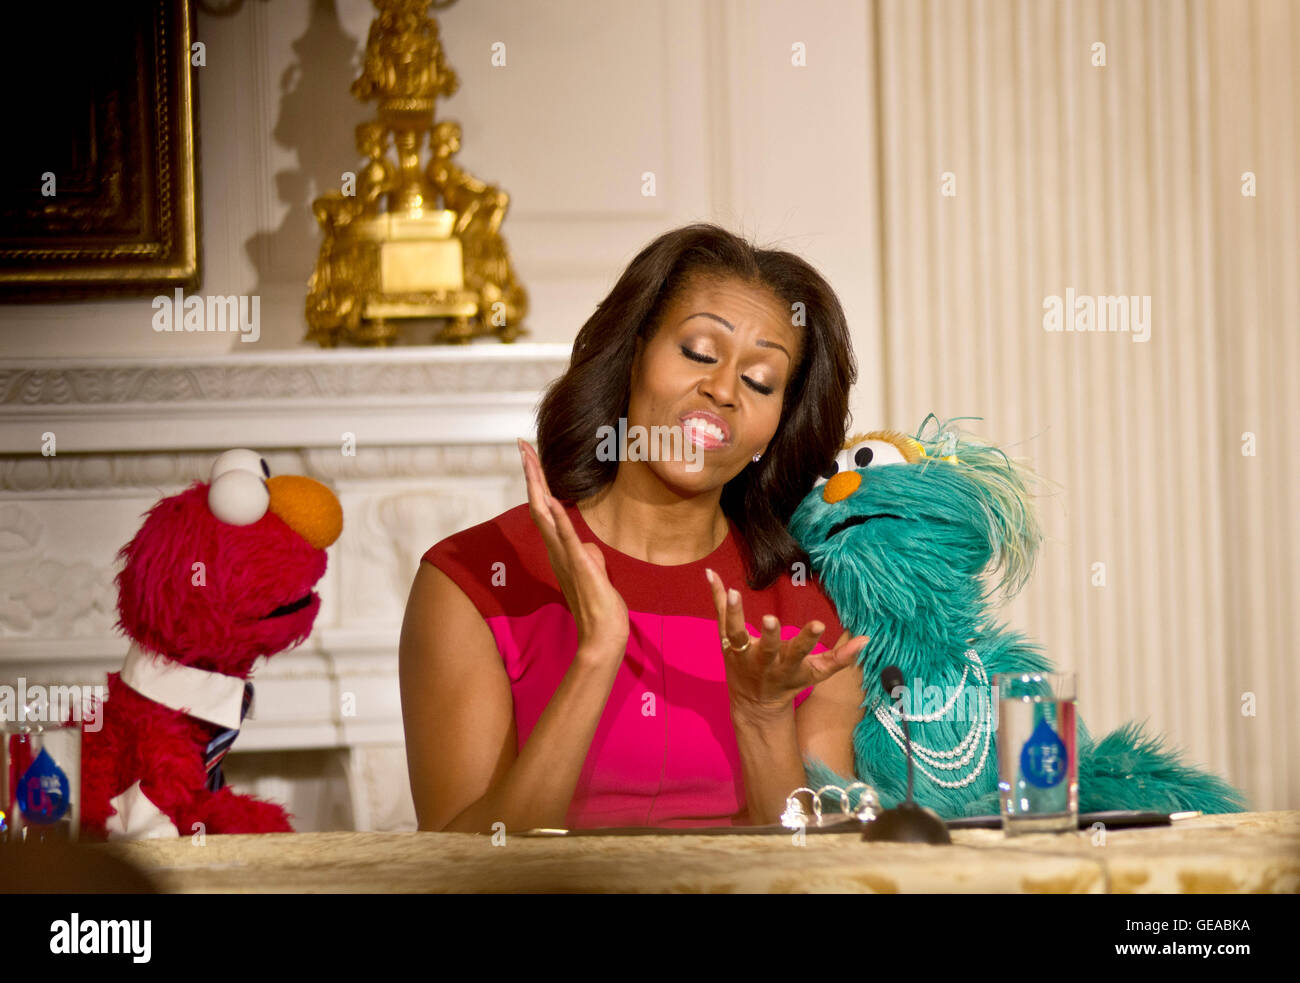 Washington, DC, ottobre 30,2013--First Lady Michelle Obama tiene una conferenza stampa per annunciare una nuova partnership con Seasame Street e la Casa Bianca per promuovere heathy mangiare.ella chat con Elmo, uno di Sesame Street caratteri. Lynch / MediaPunch Inc. Foto Stock